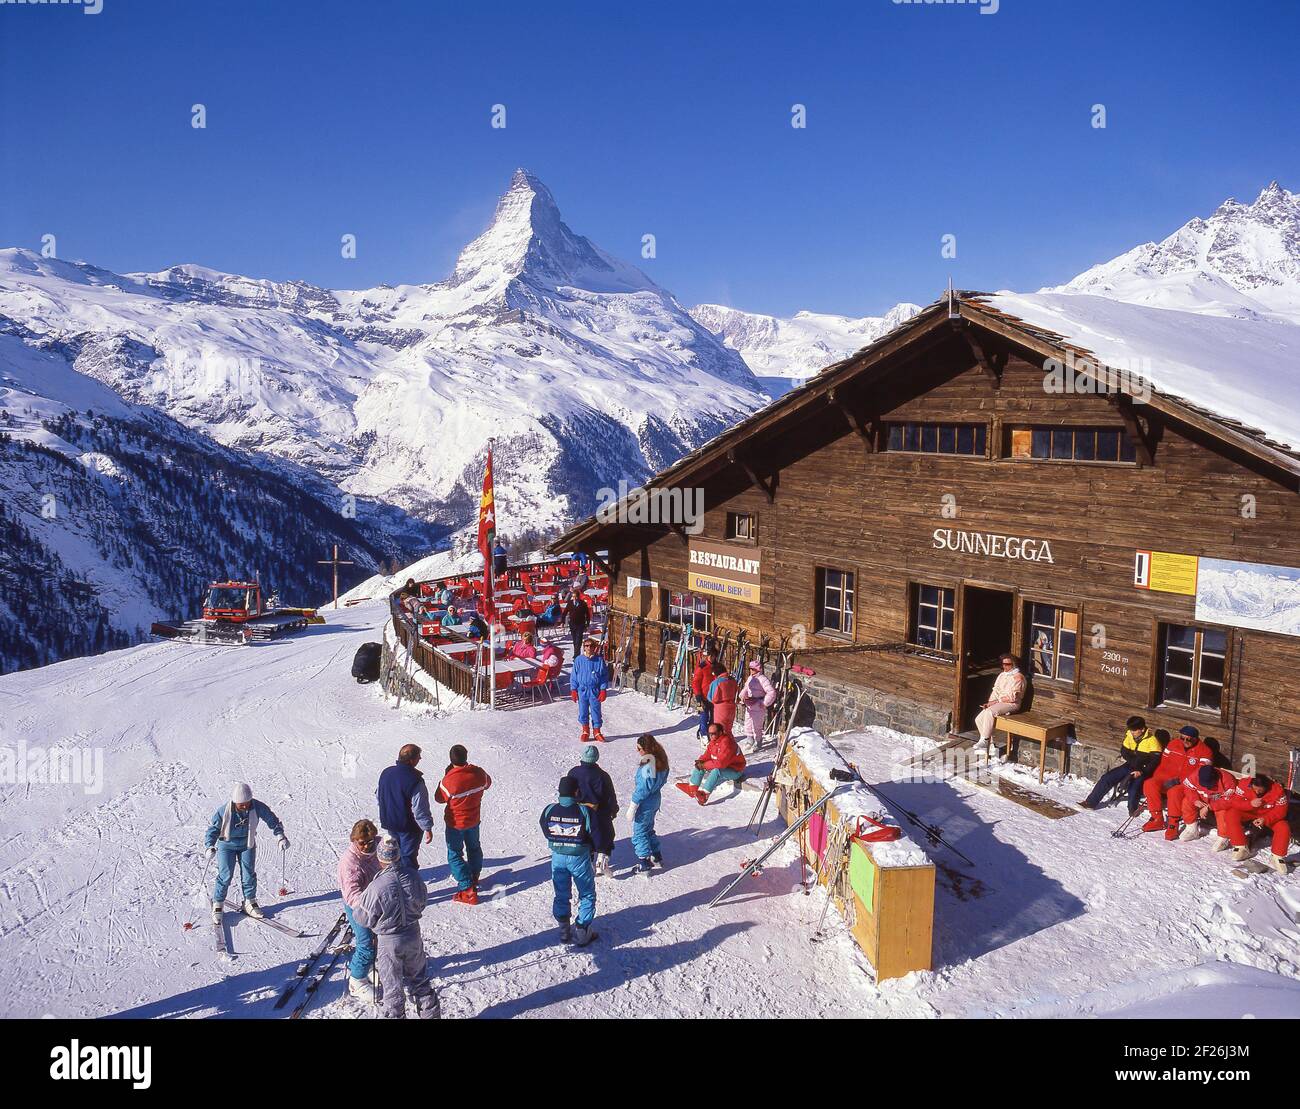 Station de ski Sunnegga montrant le Cervin, Zermatt, le Valais, Suisse Banque D'Images